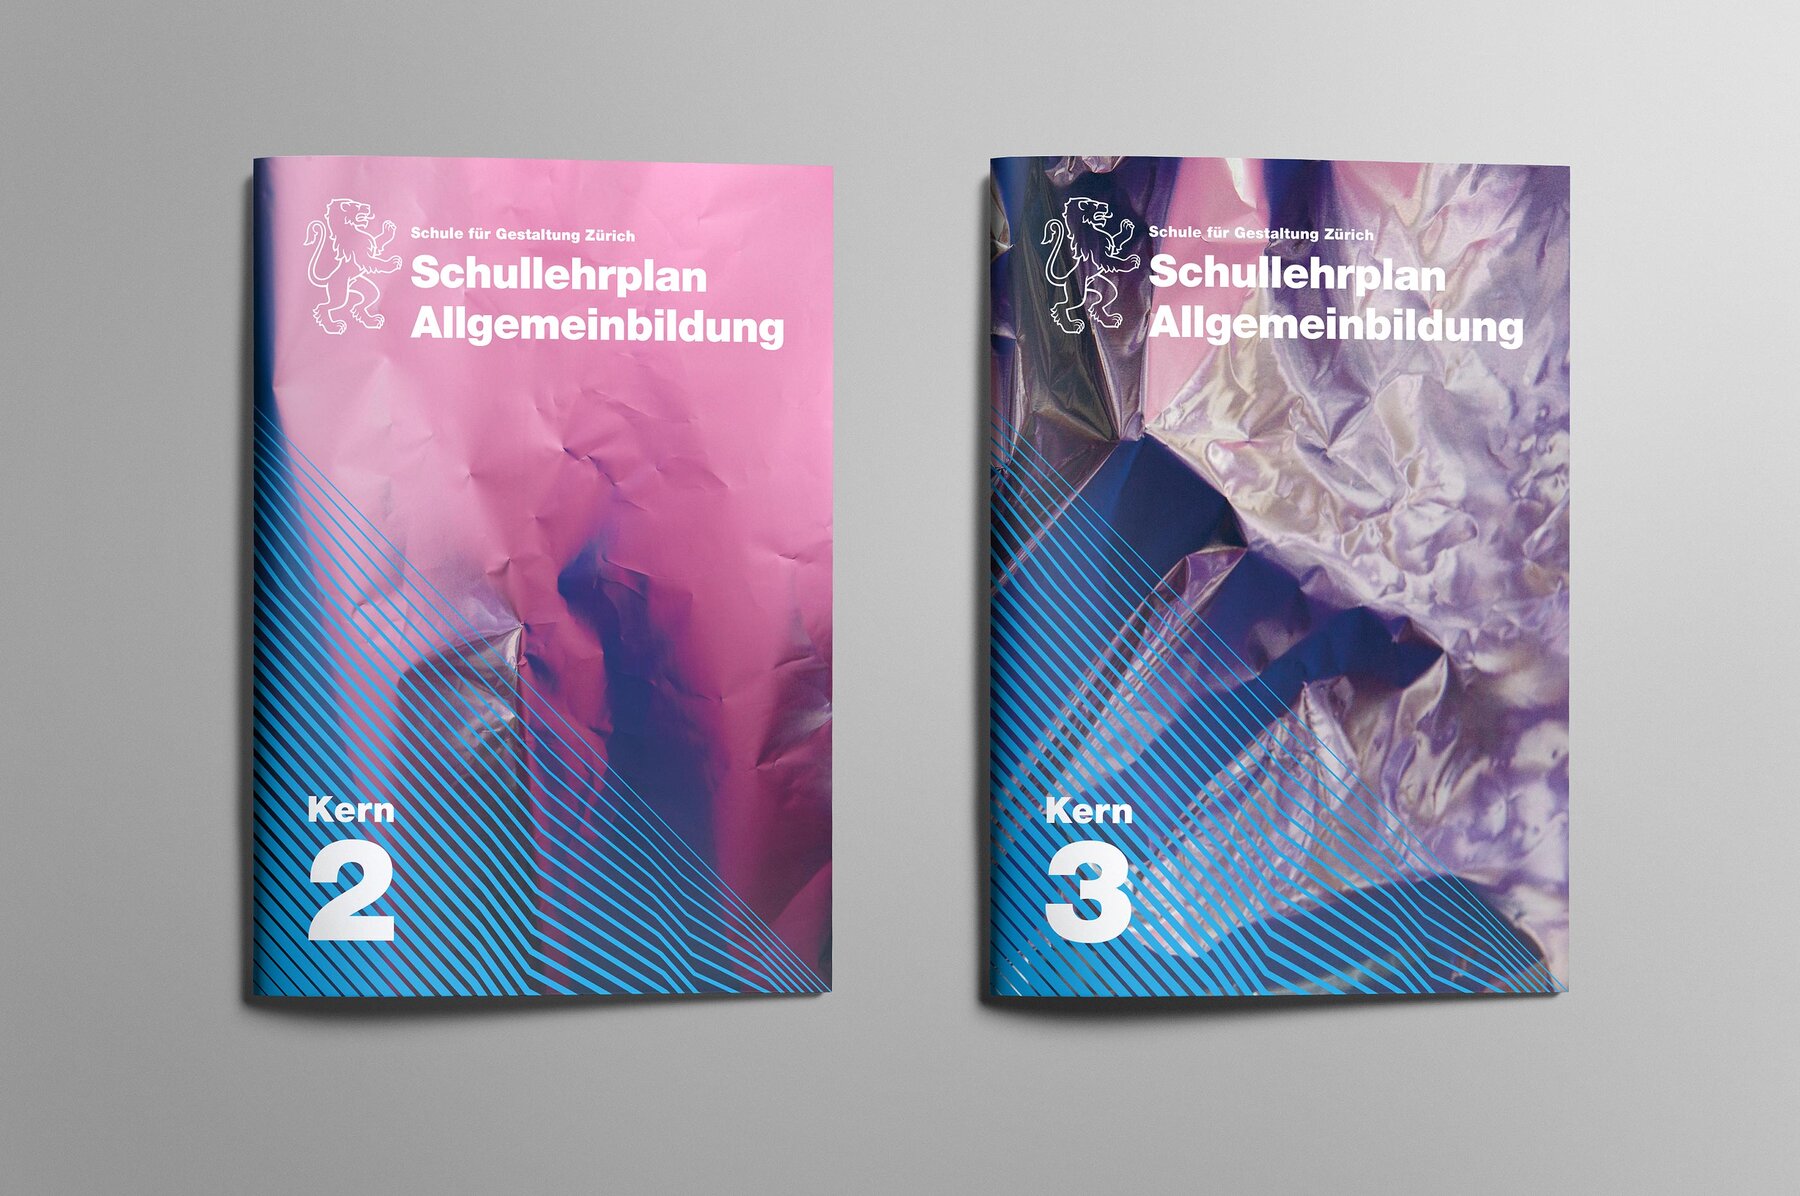 Schullehrplan Allgemeinbildung Kern 2 und 3, Schule für Gestaltung Zürich